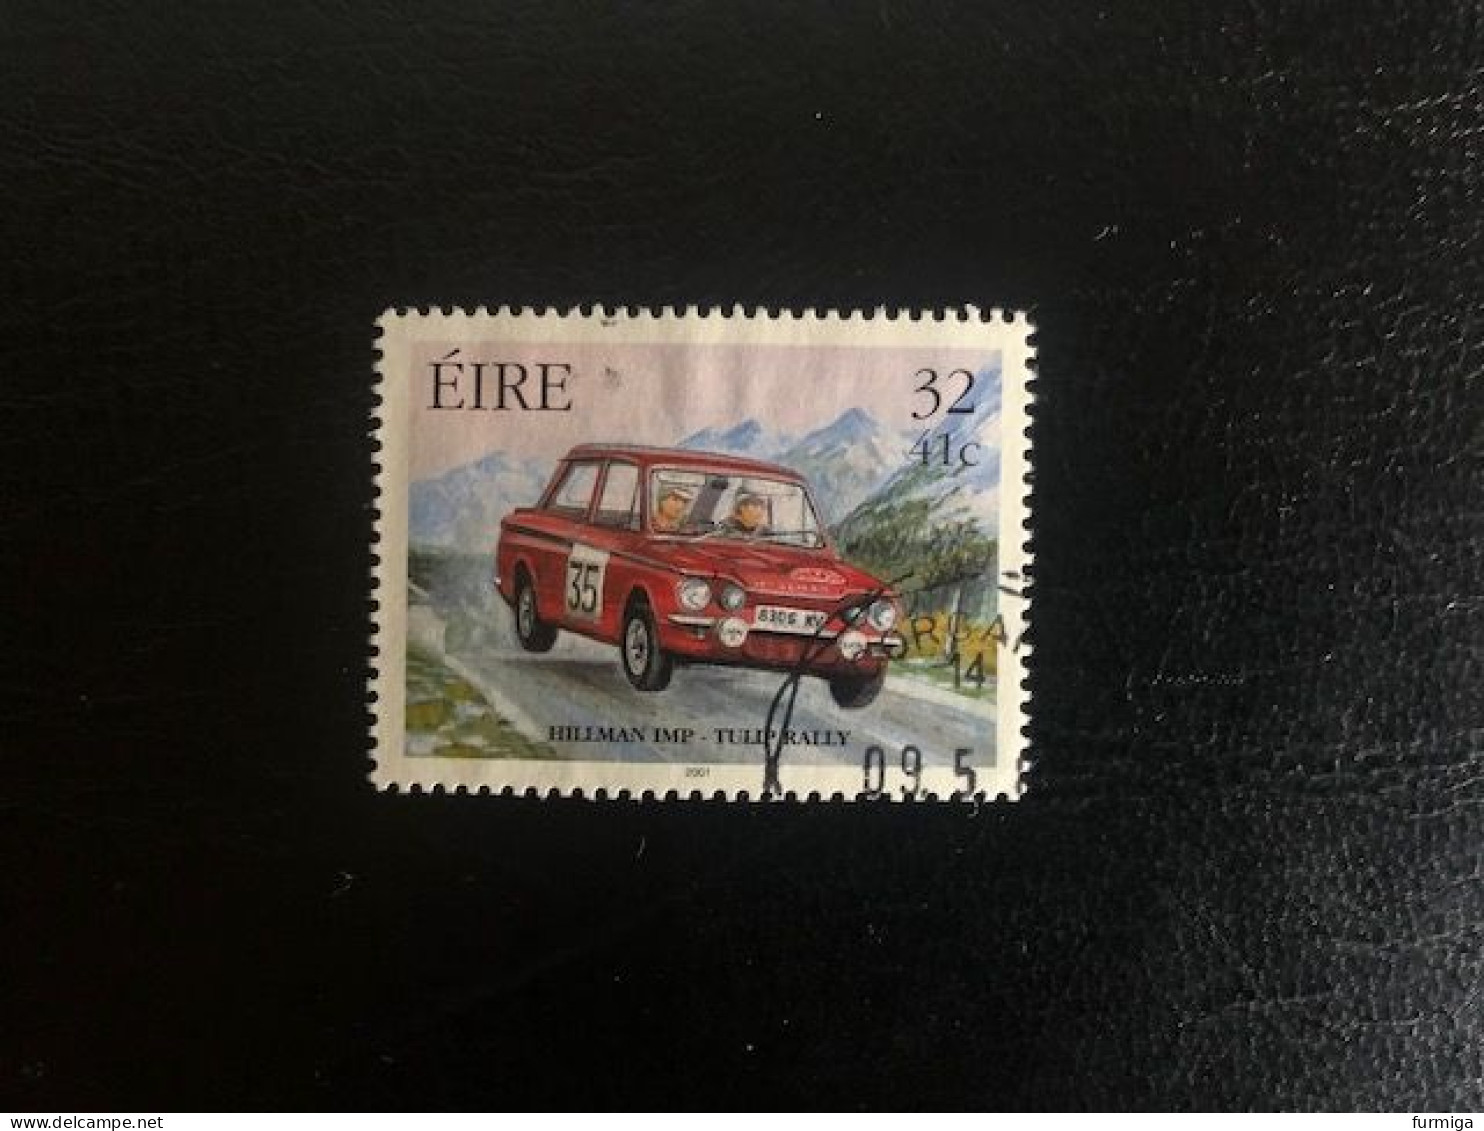 Irland EIRE 2001 - 1324 - Fein RUND Gestempelt - Fine Used LUX Postmark - Usados